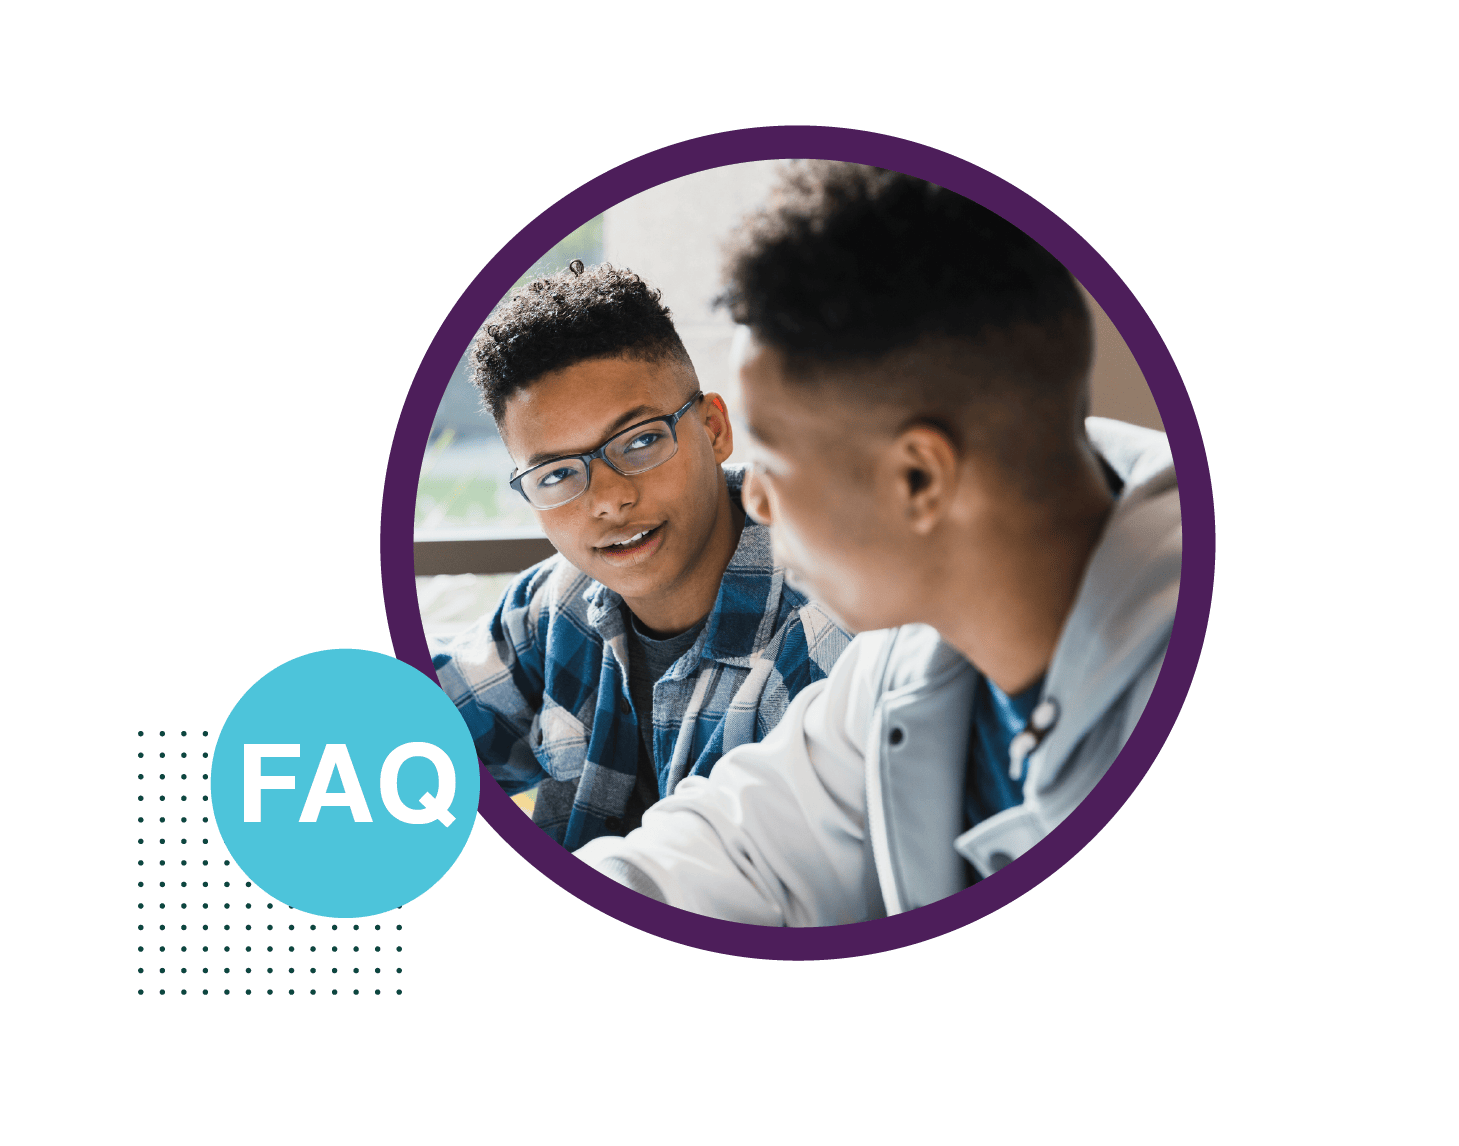 FAQ - Two Students Talking